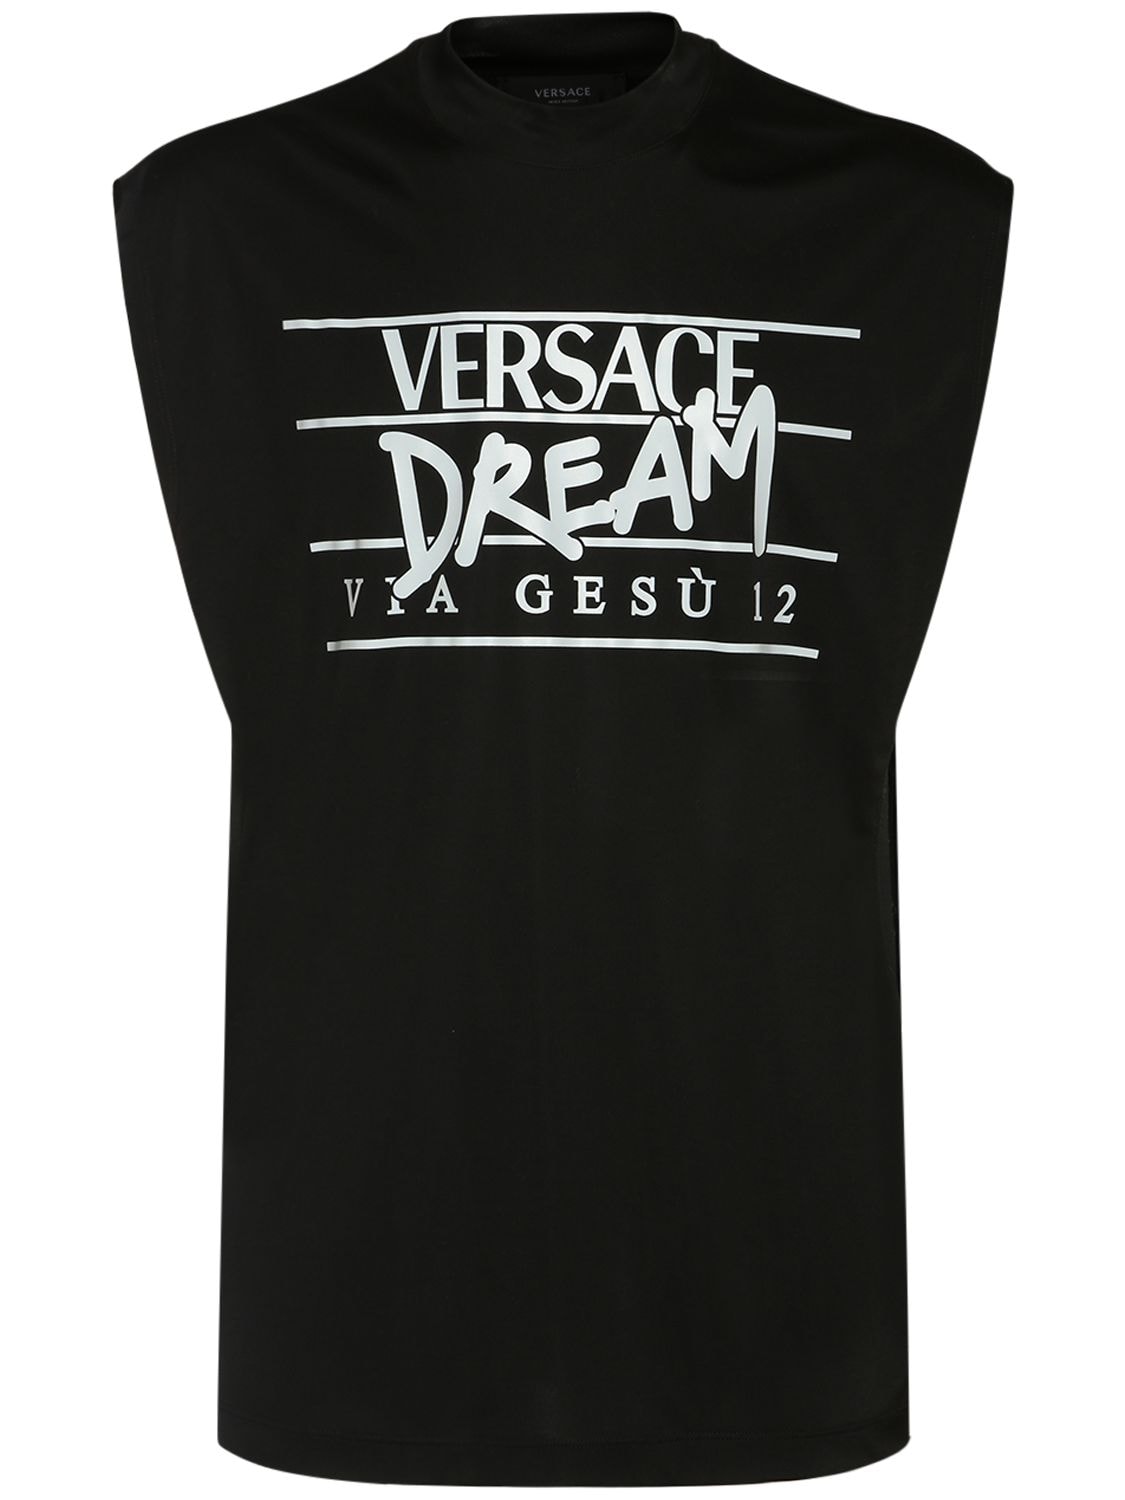 Versace - Versace dream print tank top - Black/White | Luisaviaroma